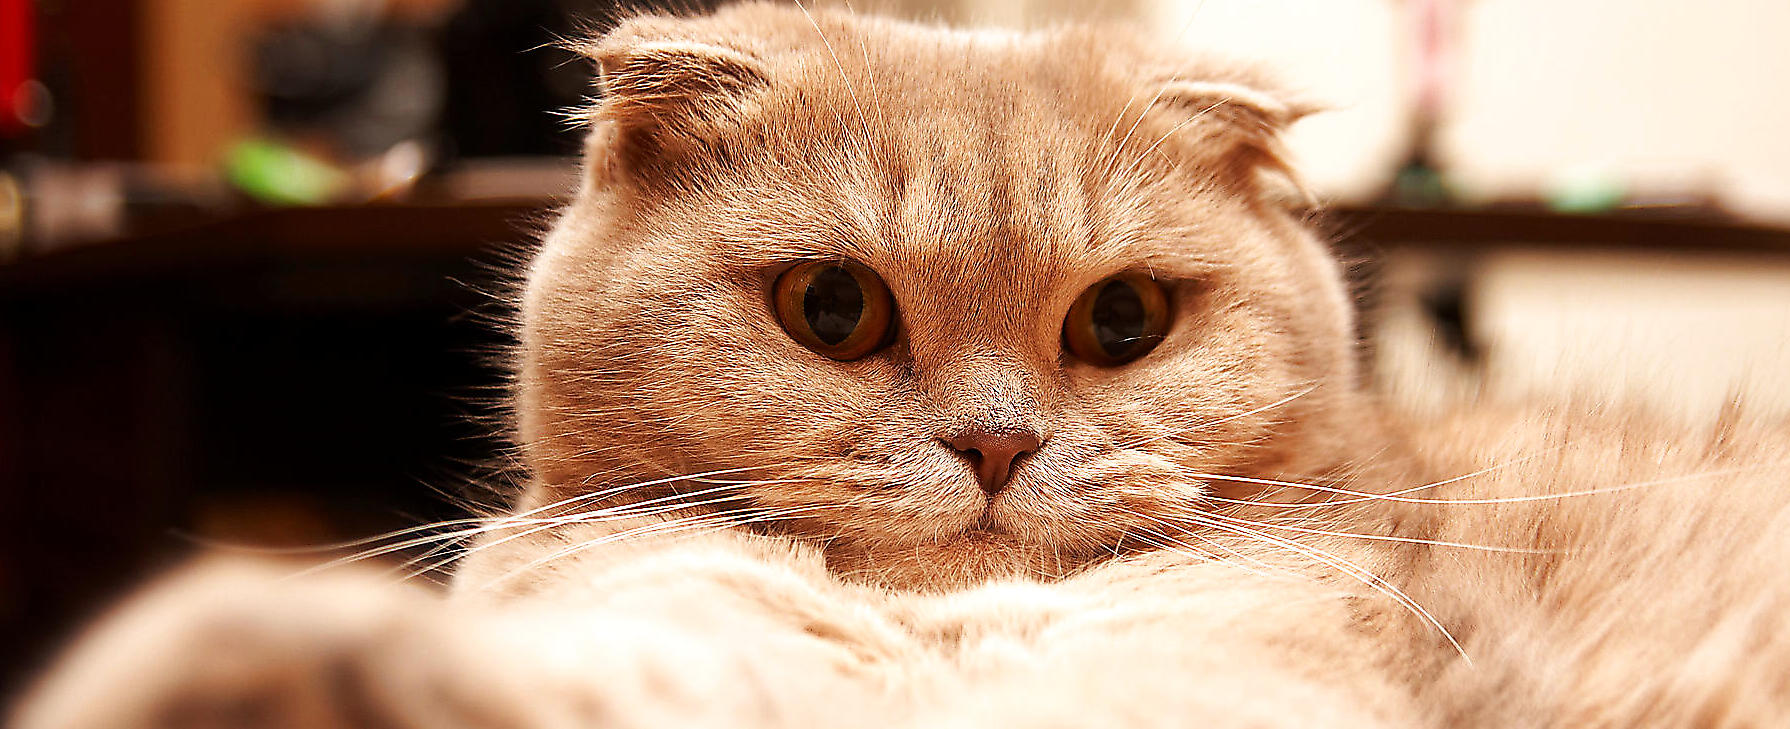 宠物猫之苏格兰折耳猫图片及品种讲解|猫咪品种-波奇网百科大全